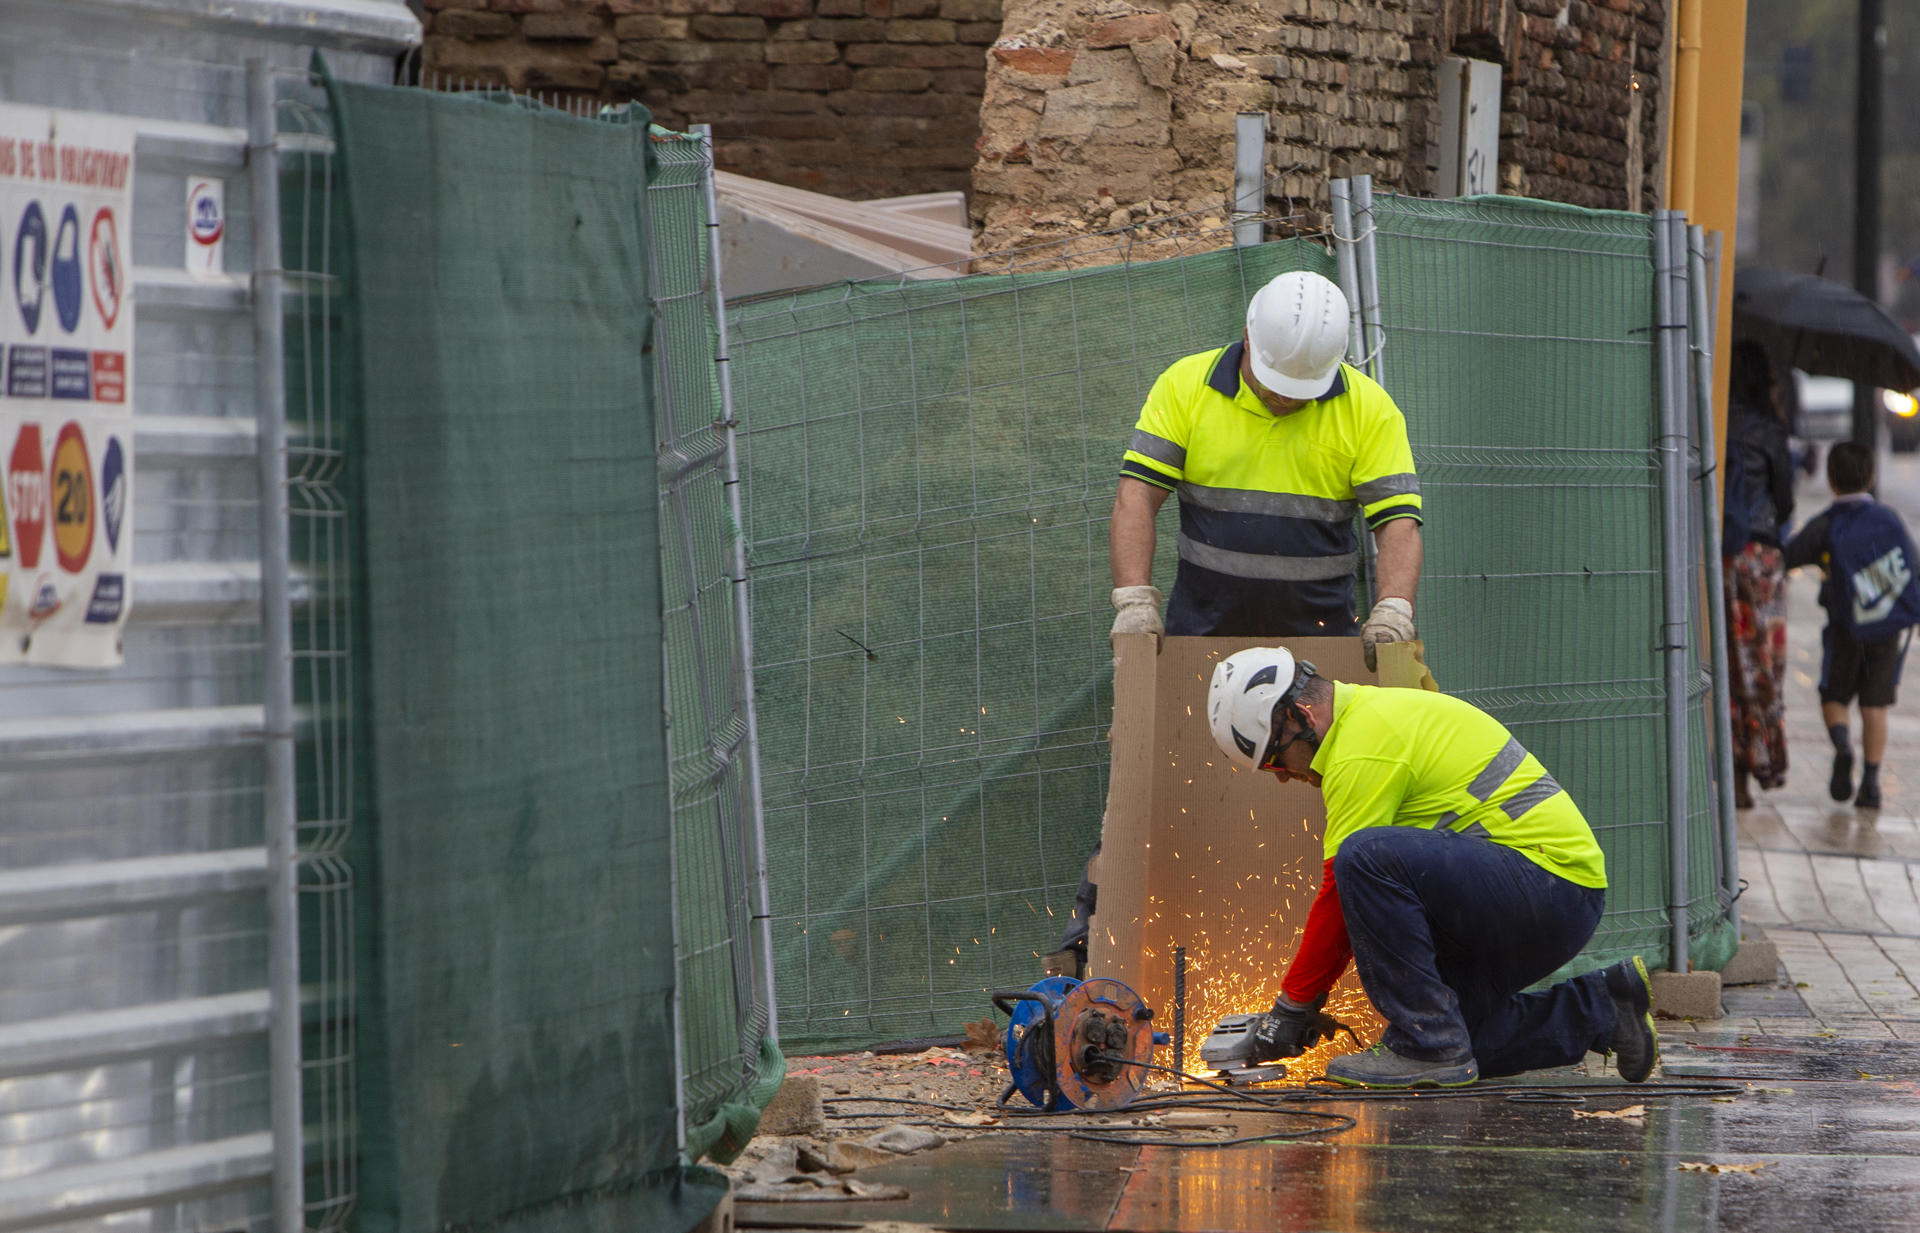 Operarios trabajan en una obra en Zaragoza.EFE/ Javier Belver